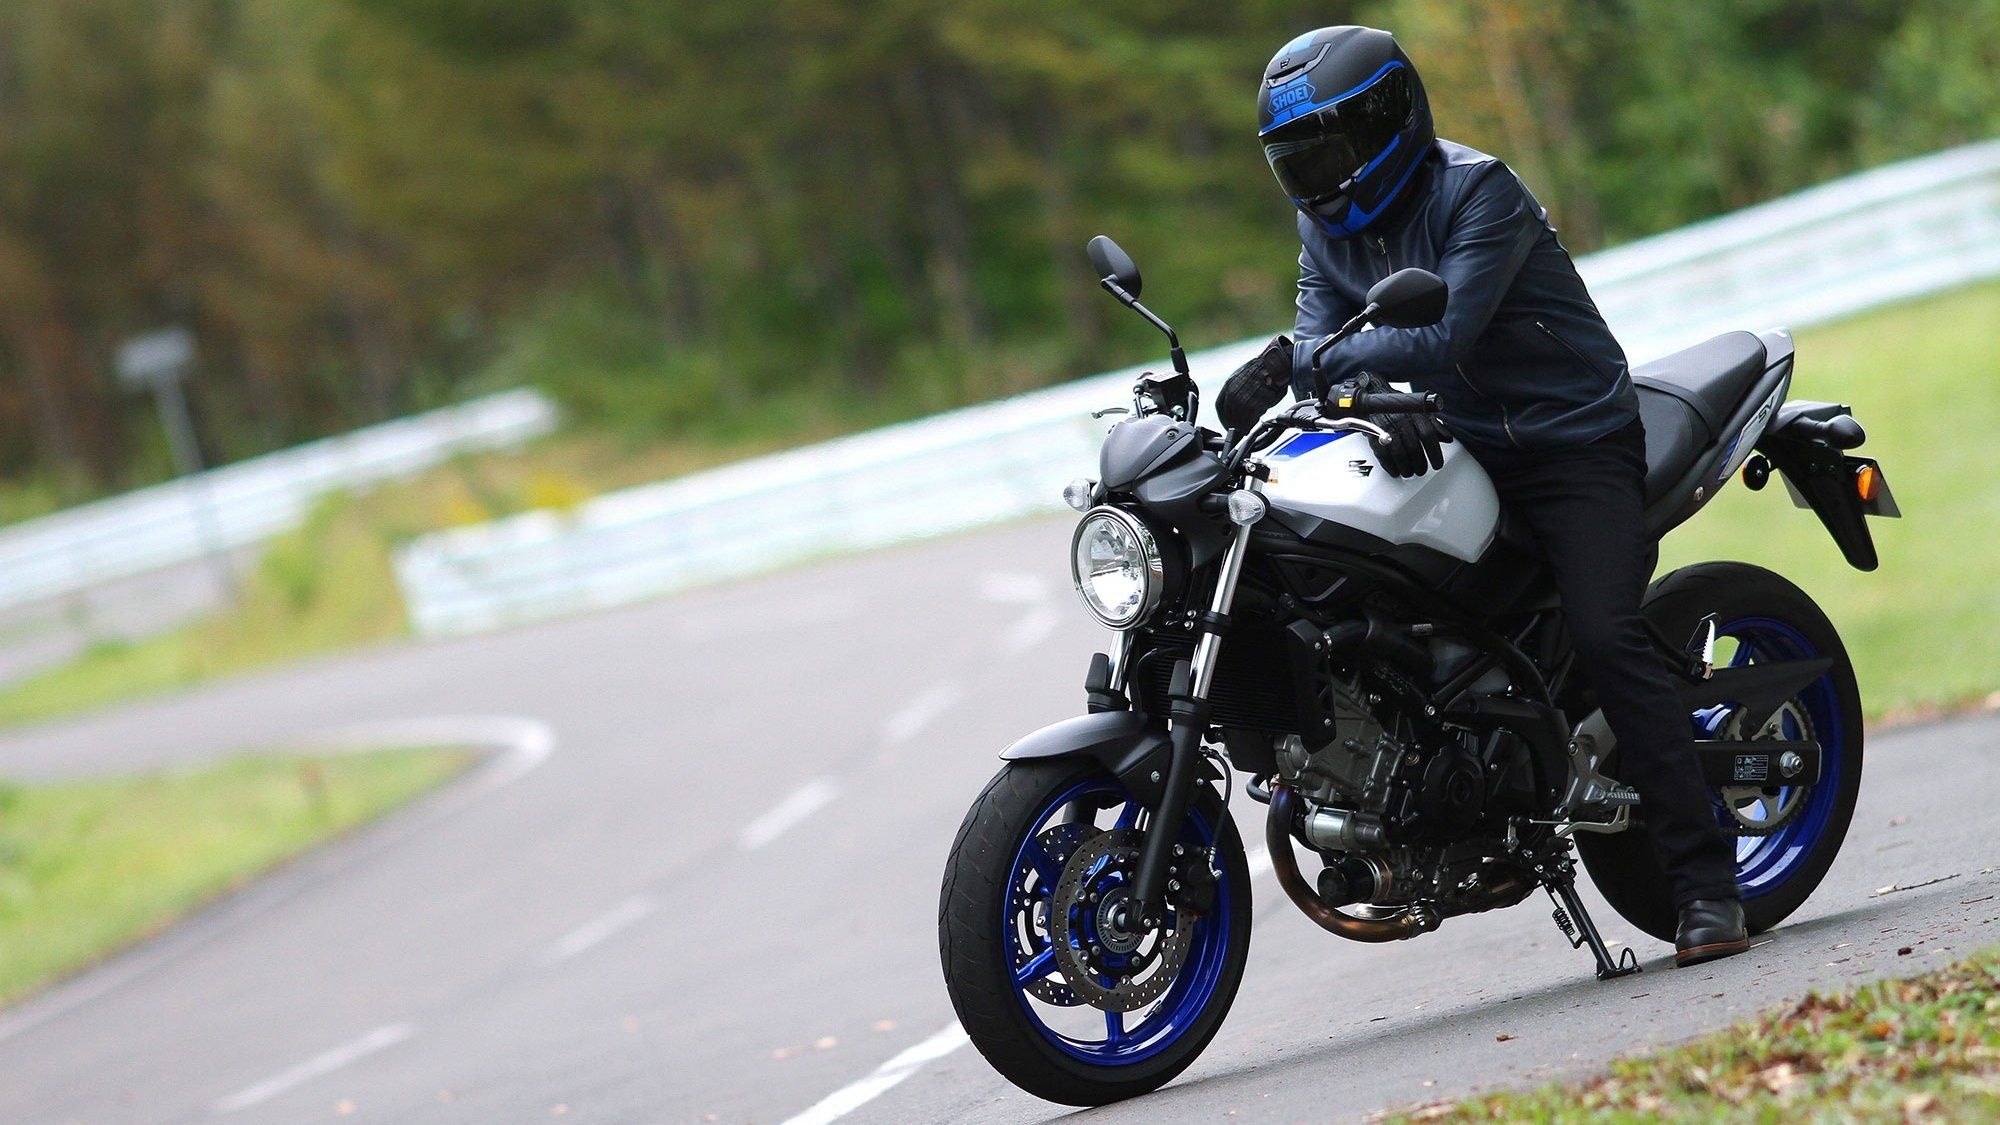 Suzuki SV650, 2017-2022 models, Top speed thrill, Motorcycle, 2000x1130 HD Desktop